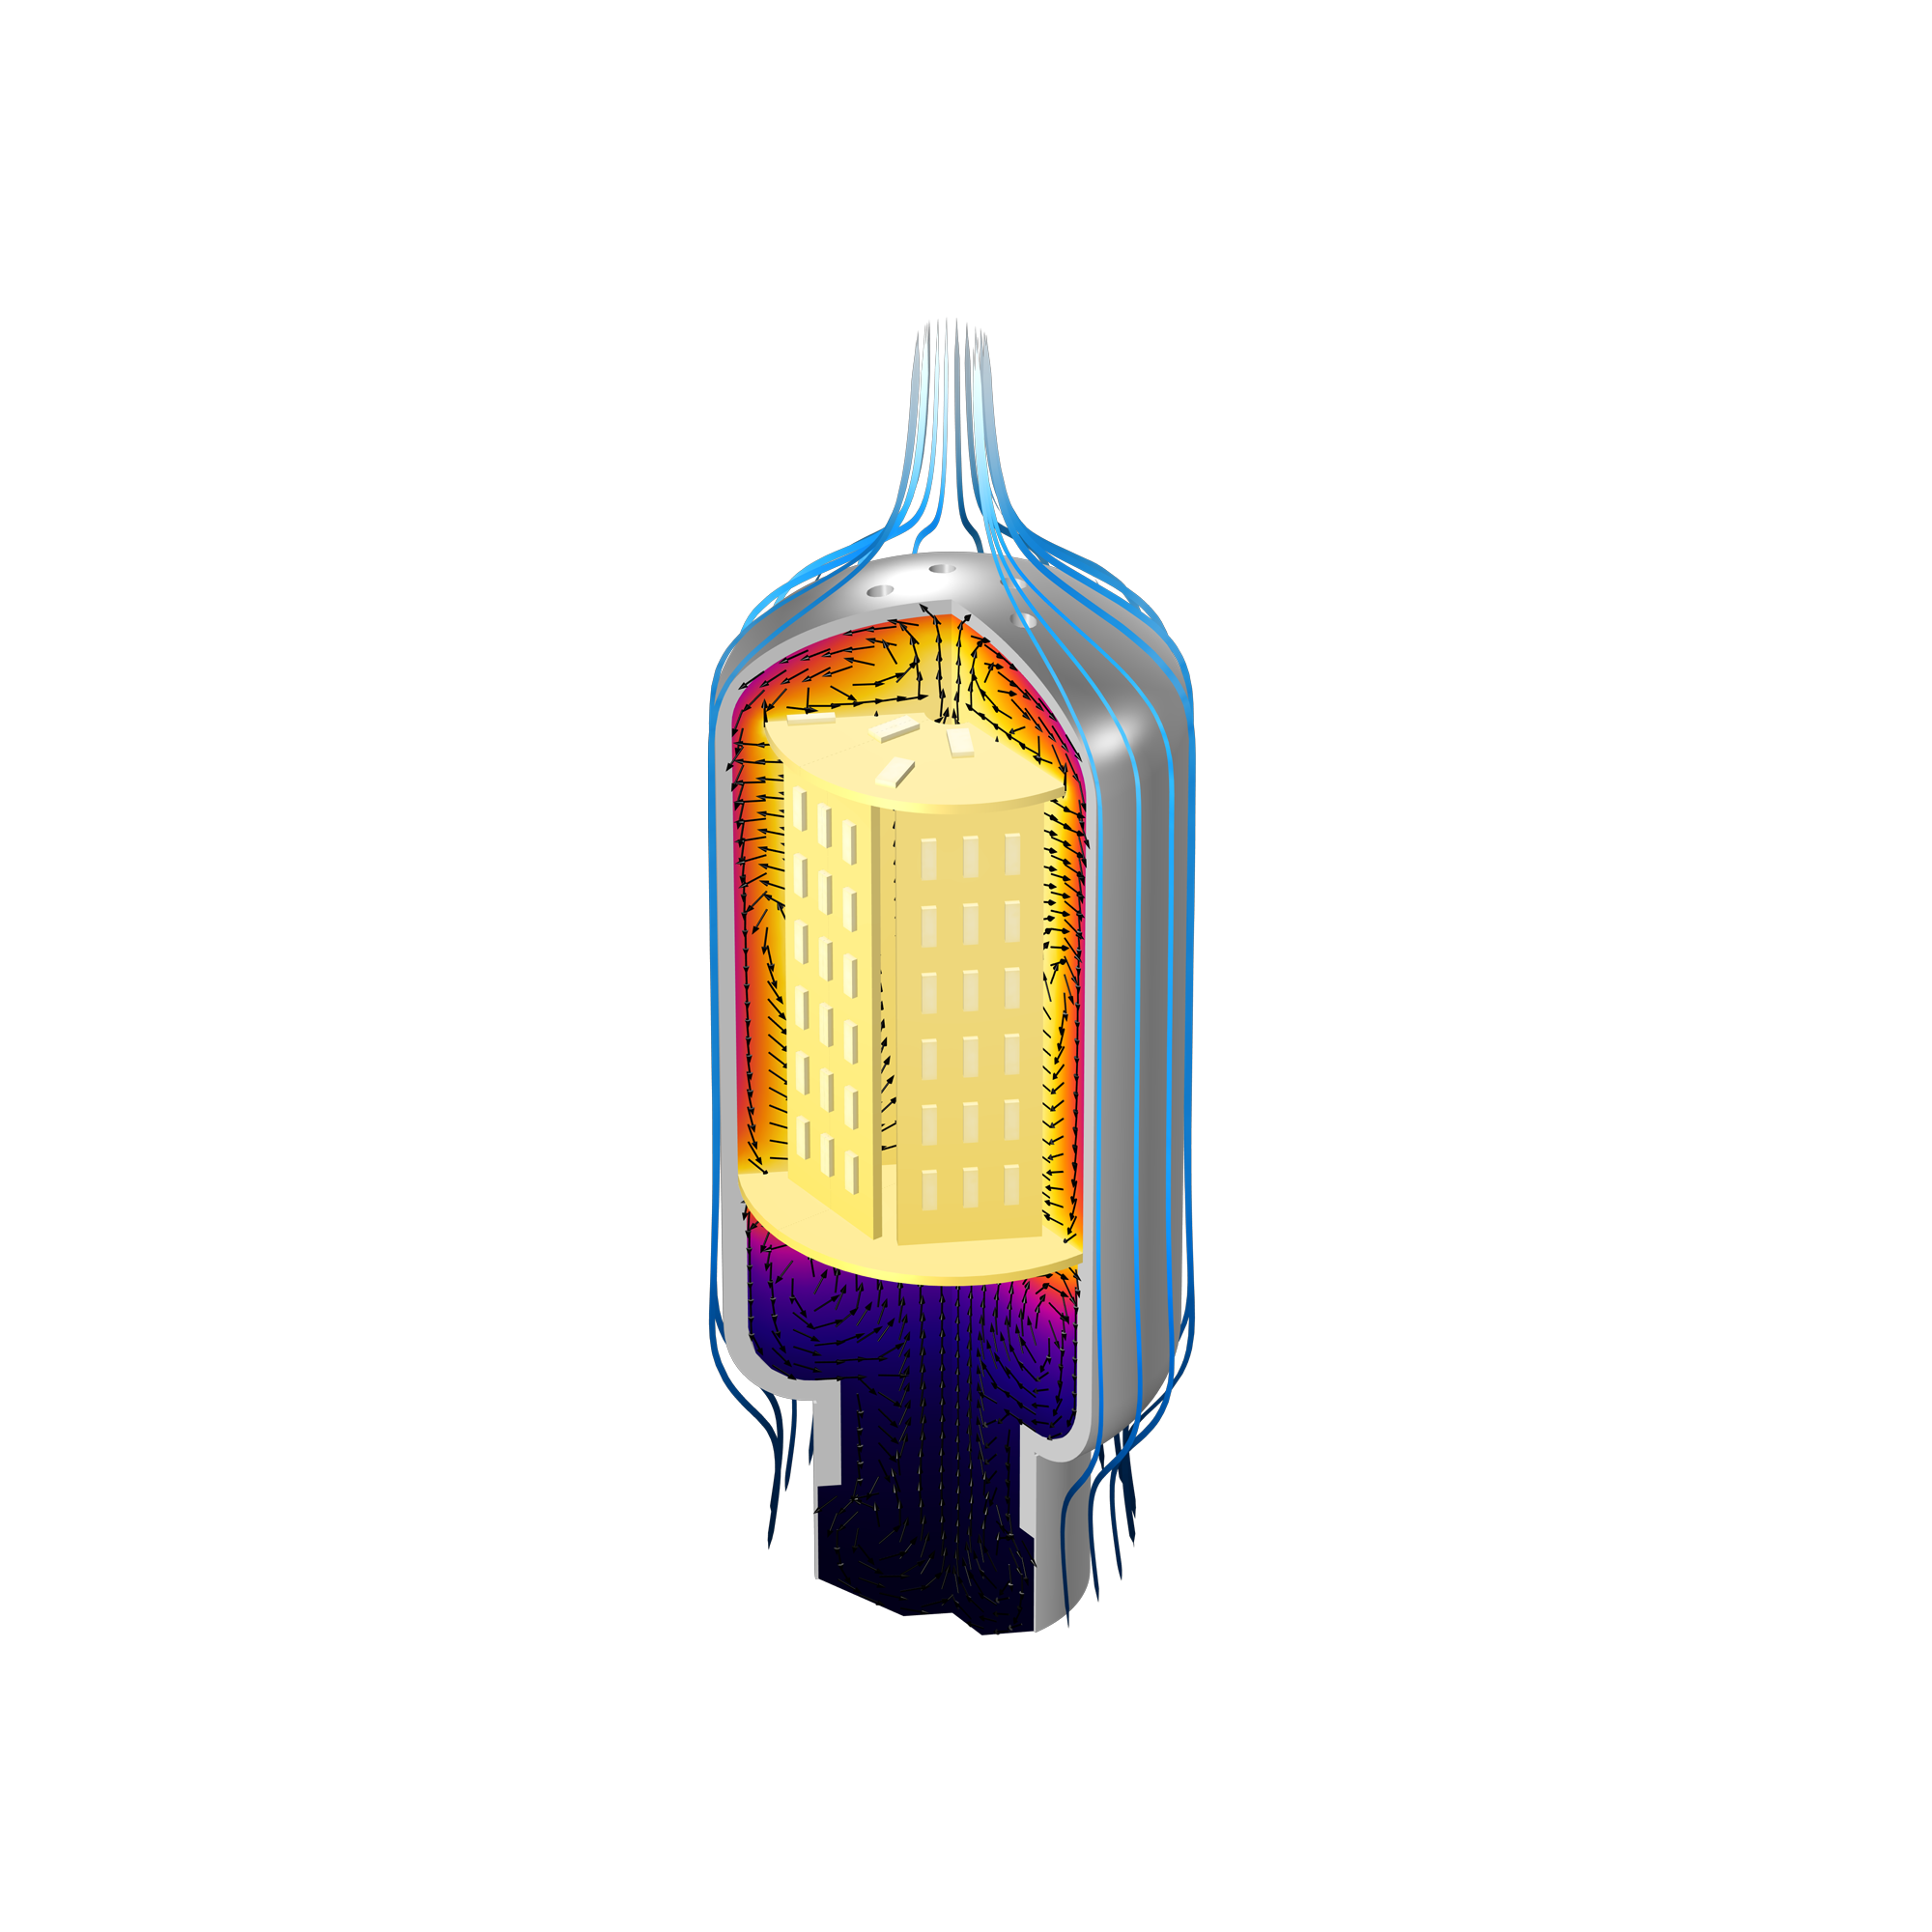 LED 灯泡的模型图像，显示了灯泡周围的流体流动以及灯泡内部的温度和流体流动。